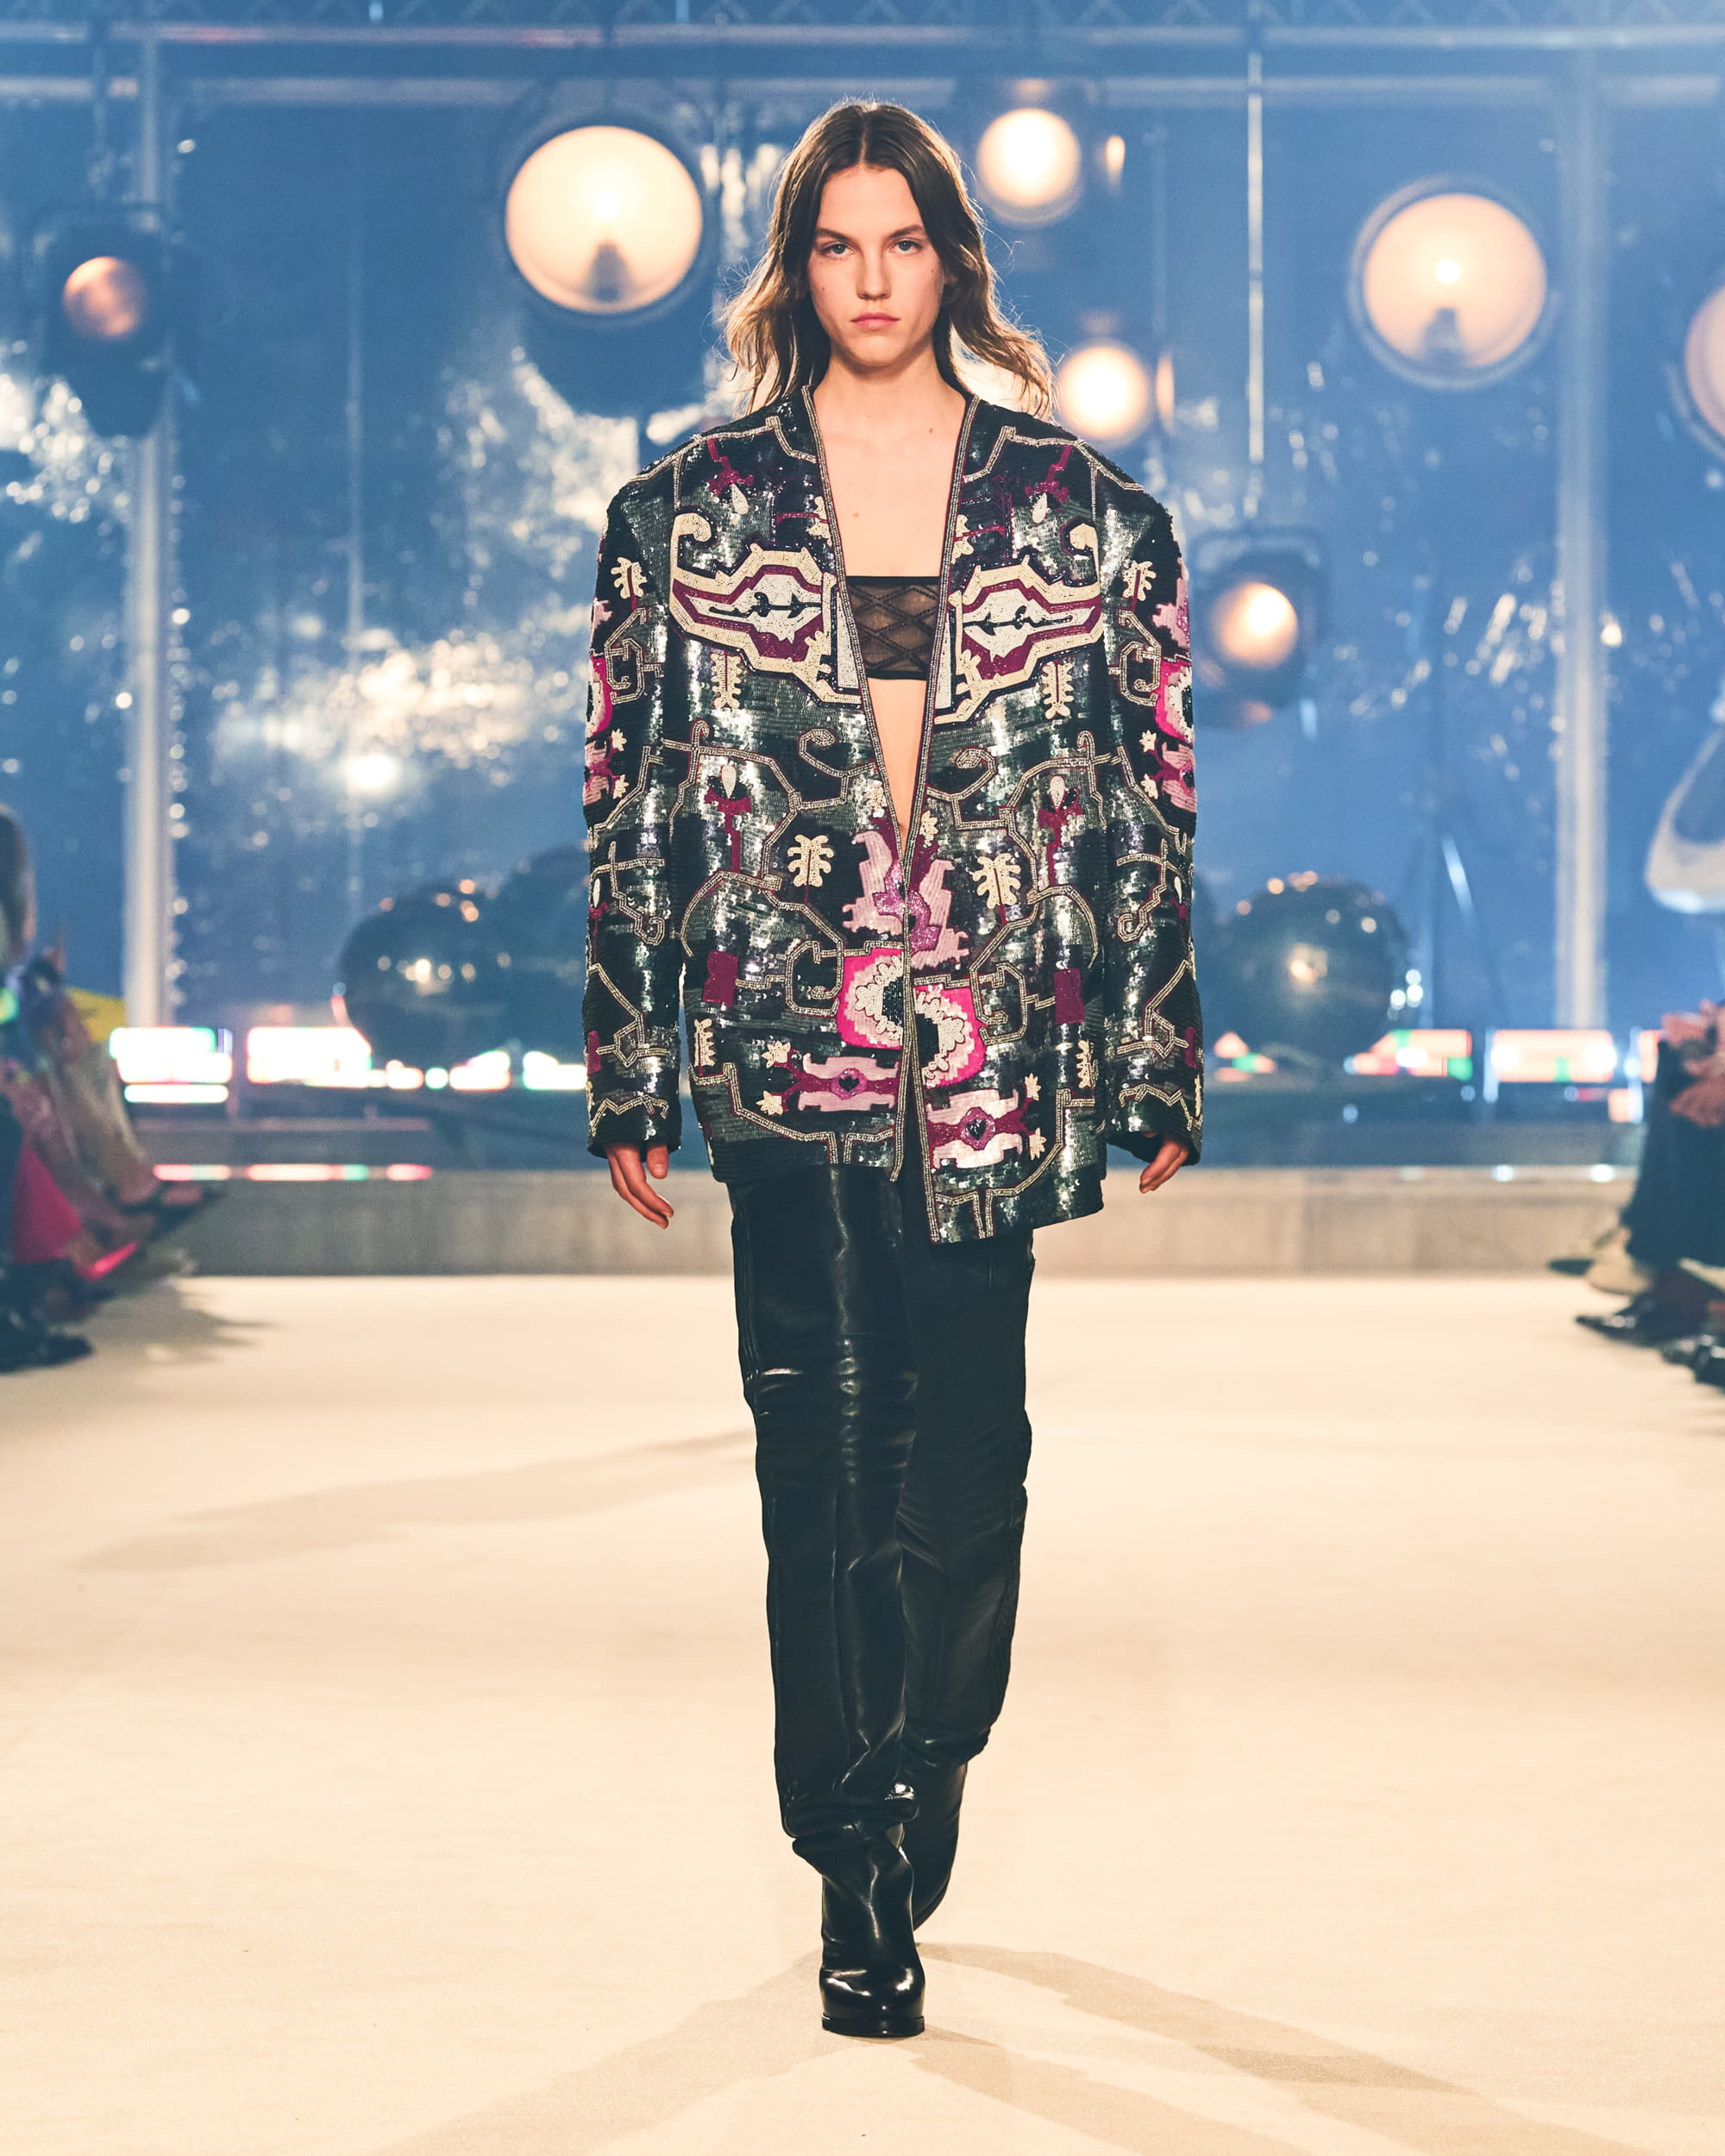 kleding Obsessie Durf Isabel Marant FW22 womenswear #40 - Tagwalk: The Fashion Search Engine